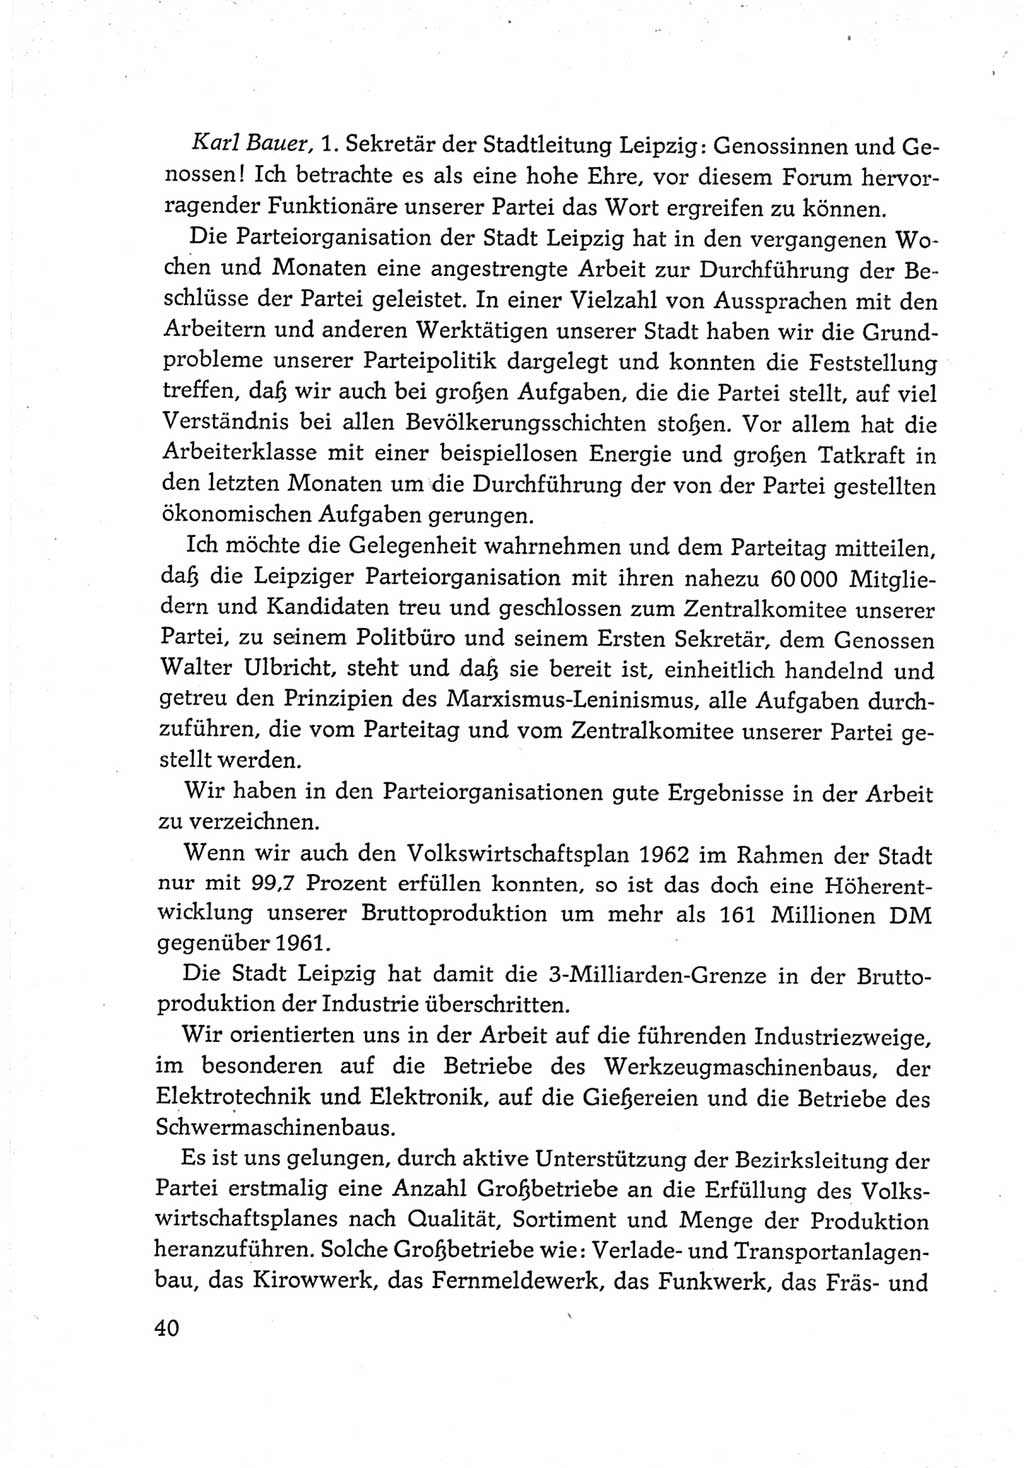 Protokoll der Verhandlungen des Ⅵ. Parteitages der Sozialistischen Einheitspartei Deutschlands (SED) [Deutsche Demokratische Republik (DDR)] 1963, Band Ⅲ, Seite 40 (Prot. Verh. Ⅵ. PT SED DDR 1963, Bd. Ⅲ, S. 40)